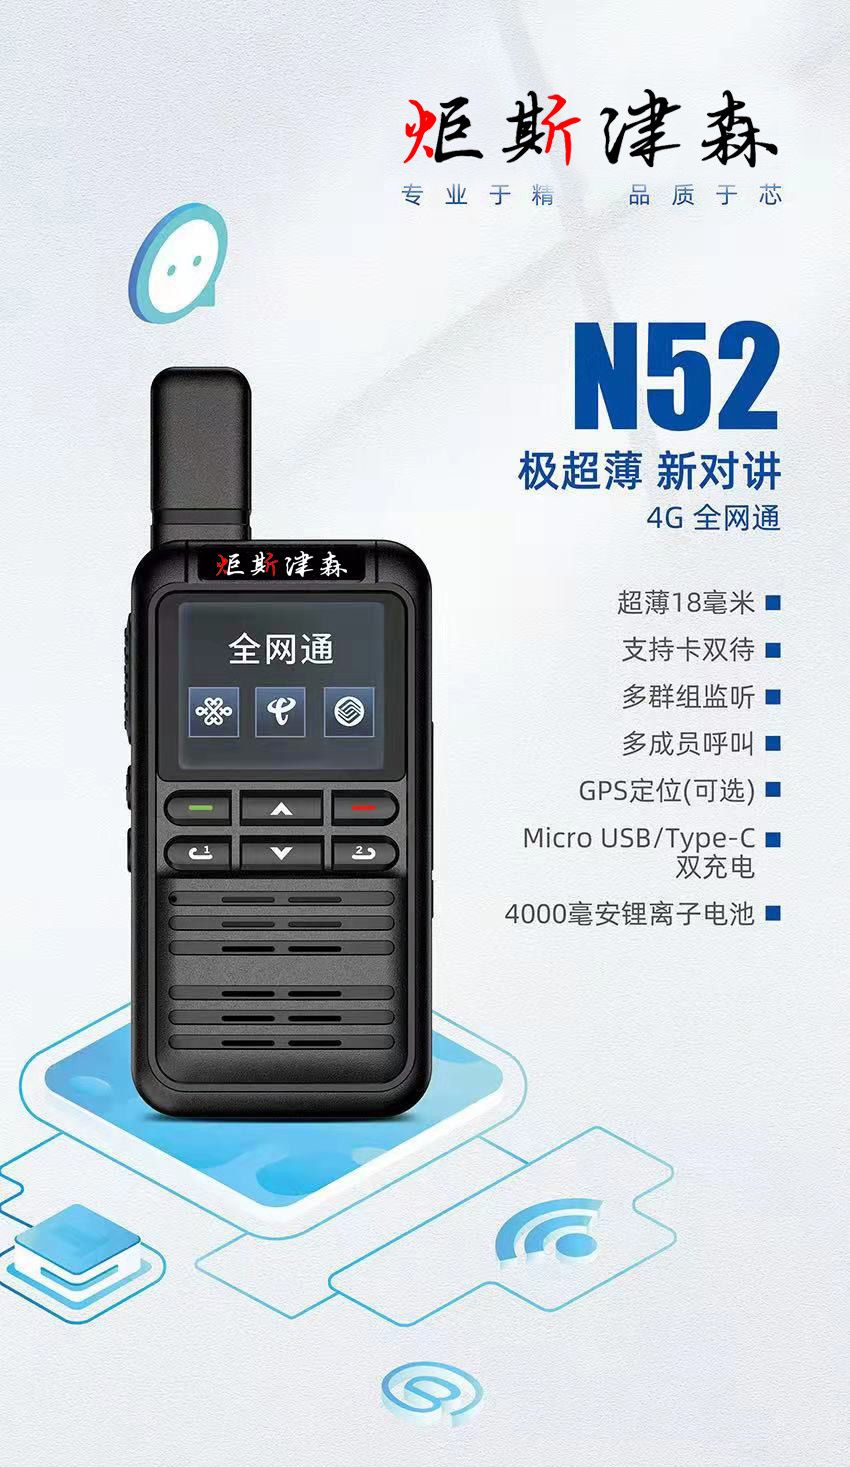 荆门市 | N52型薄款全网通插卡对讲机